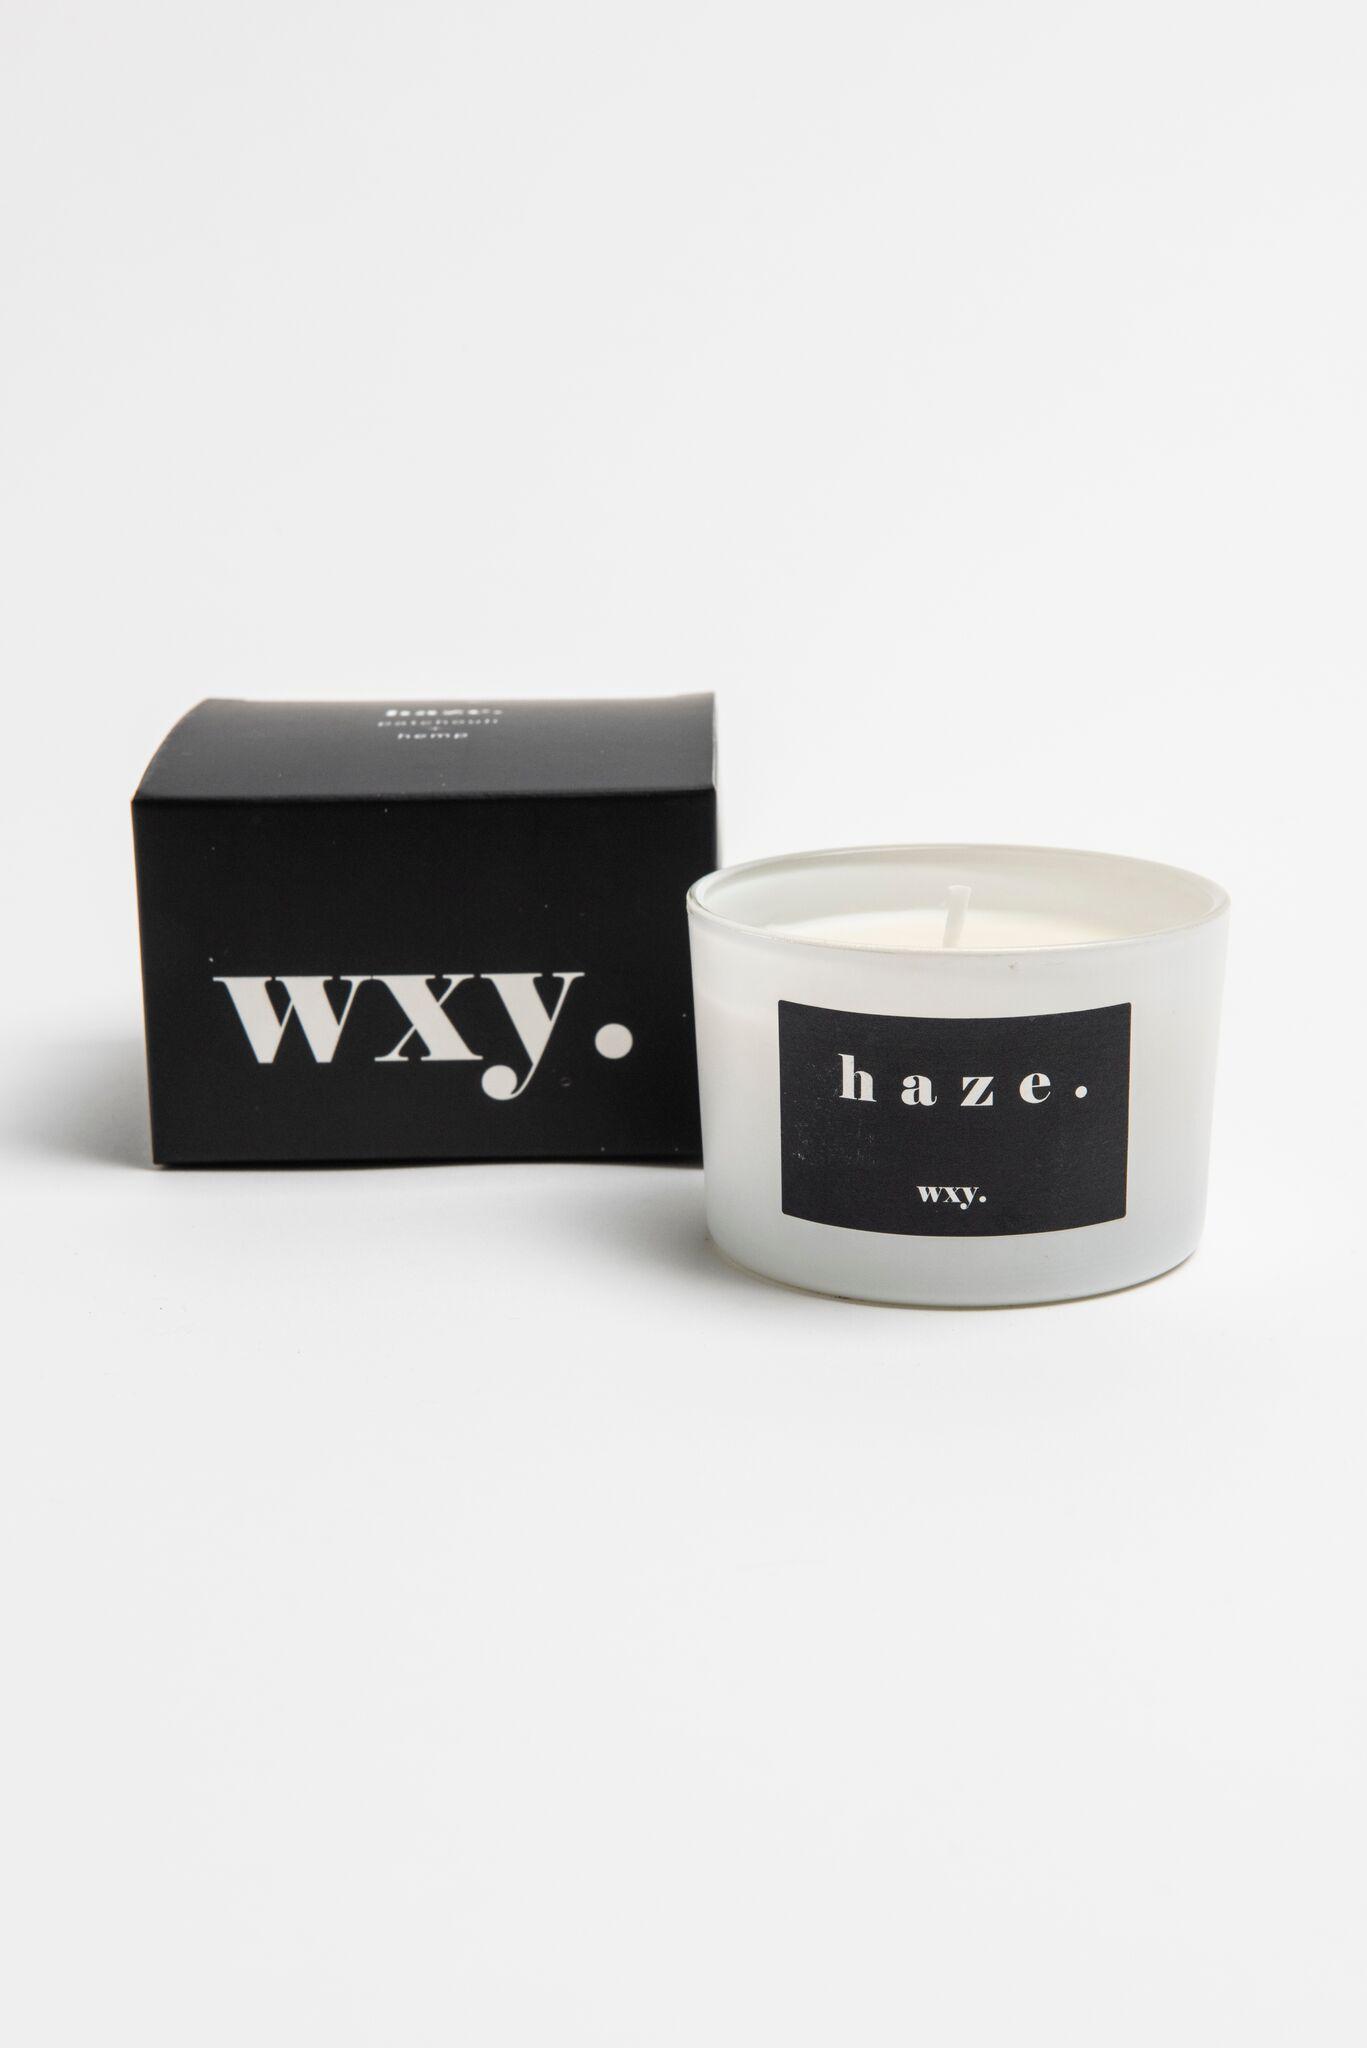 Wxy lõhnaküünal Haze: Patchouli & Hemp, 85g